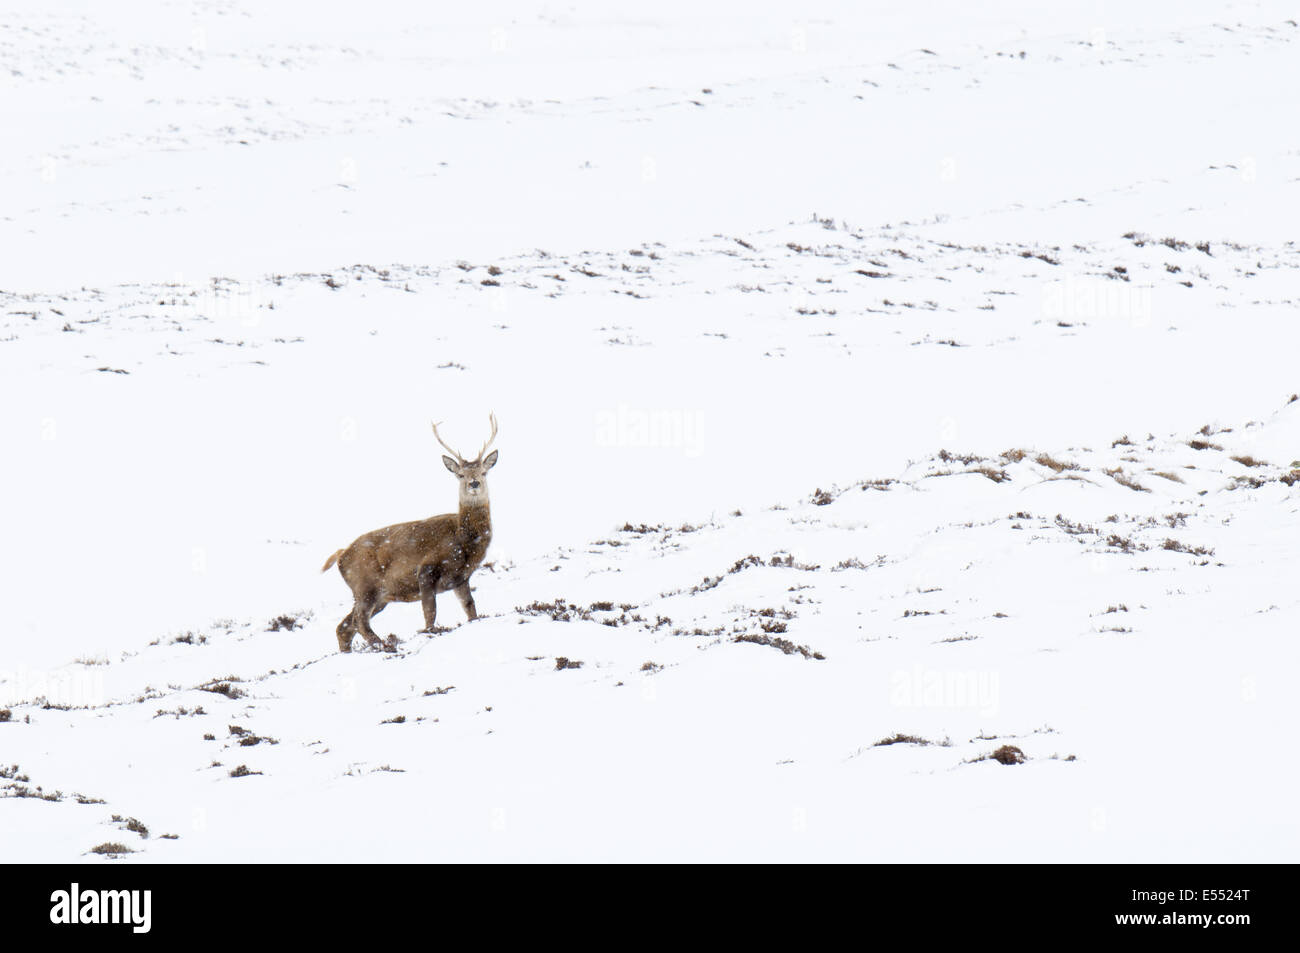 Red Deer (Cervus elaphus) stag, debout sur la montagne couverte de neige pendant les chutes de neige, Glen Clunie Cairngorms, N.P., Aberdeenshire, Ecosse, Highlands, Mars Banque D'Images